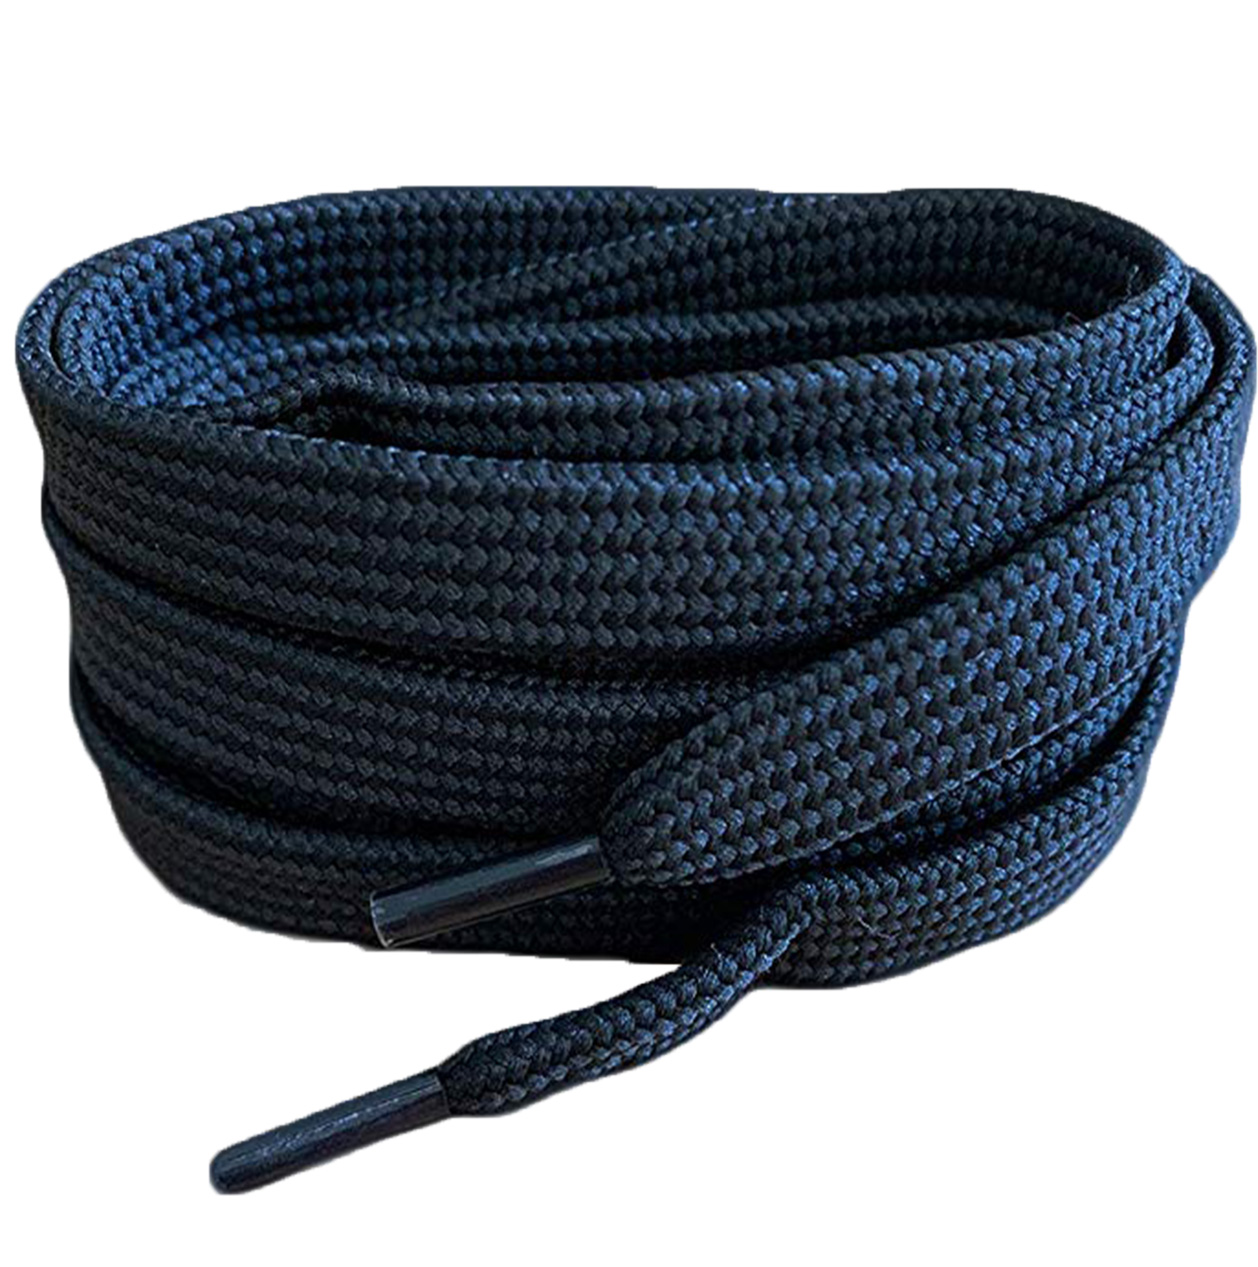 Black-Flat-Trainer-Shoelaces-1.jpg